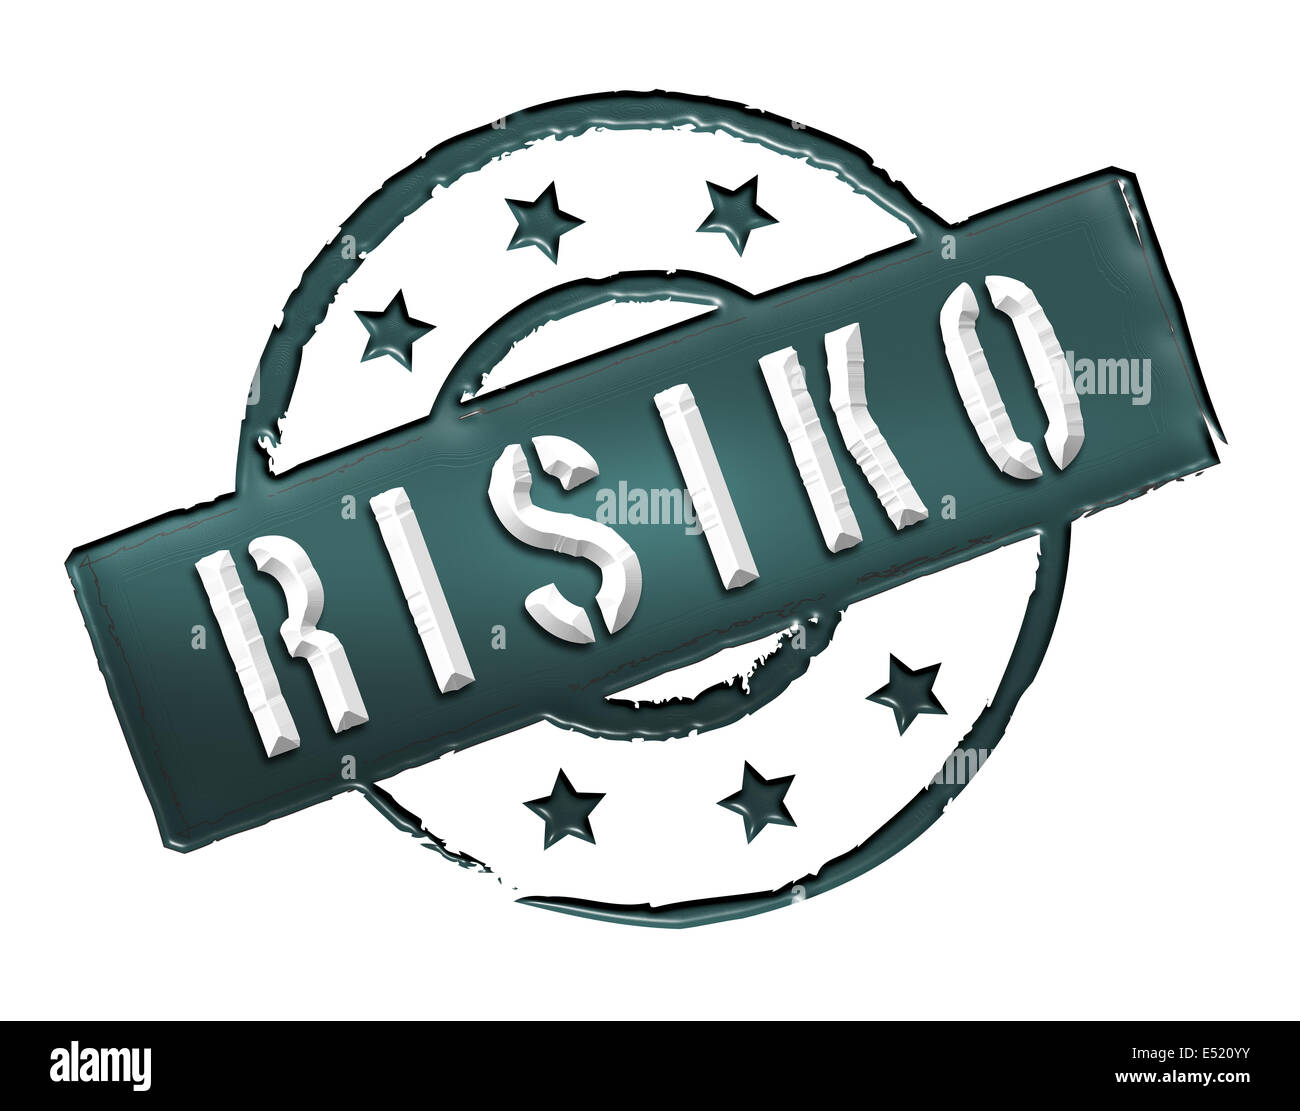 Stamp - RISIKO Stock Photo